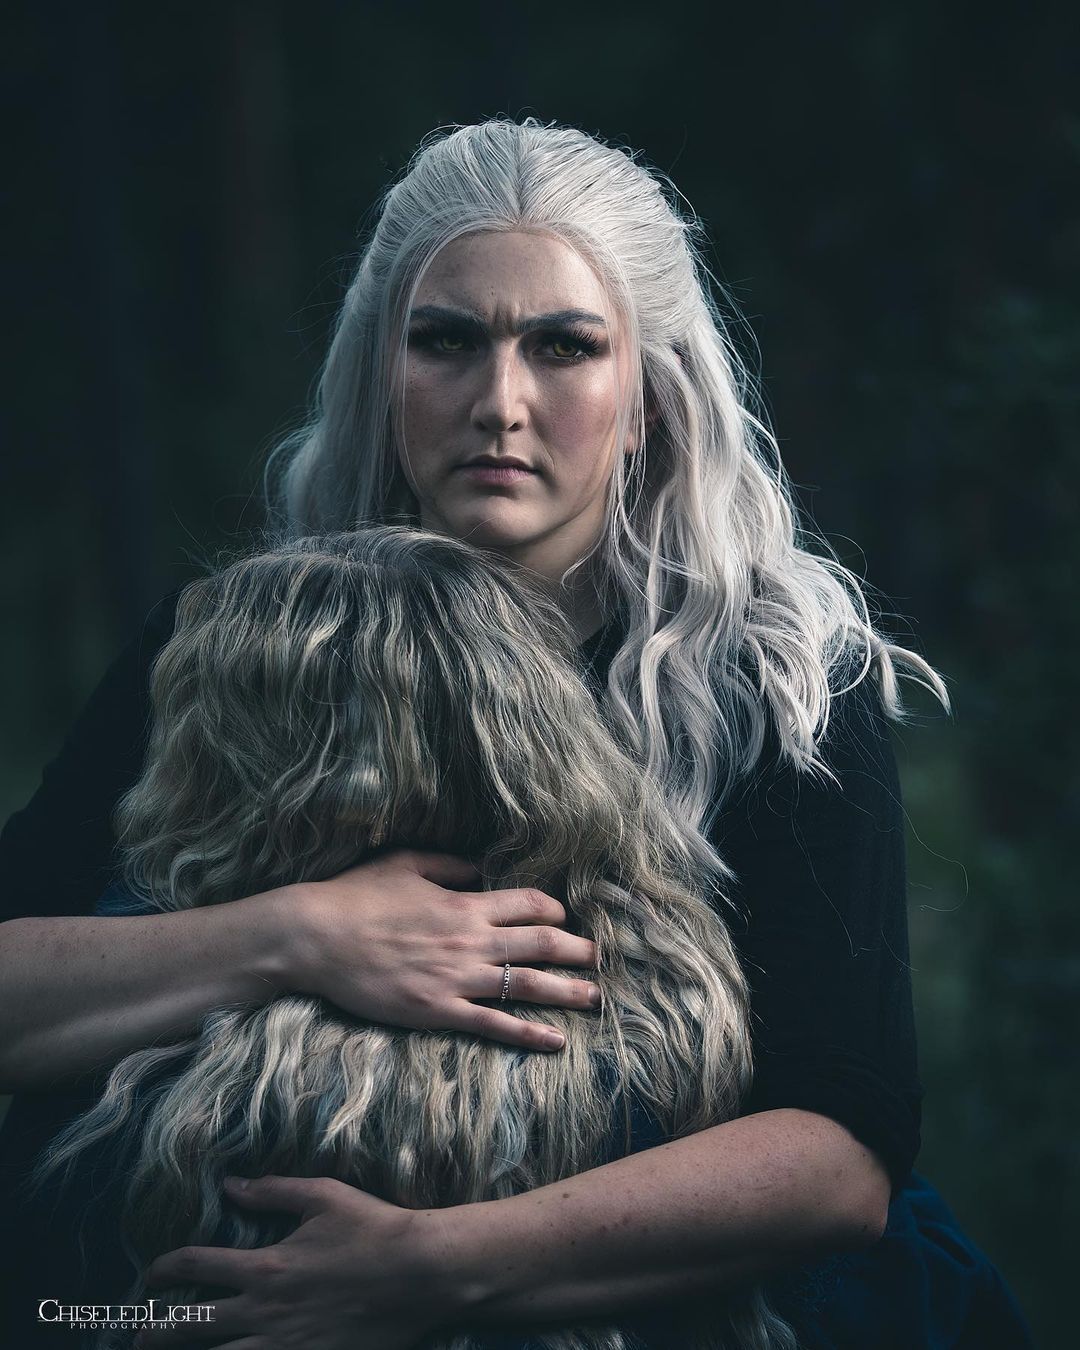 Косплей на Геральта и Цири из сериала The Witcher от Netflix. Источник: instagram.com/laurendoescosplay. Авторы: Loren и Shersten.